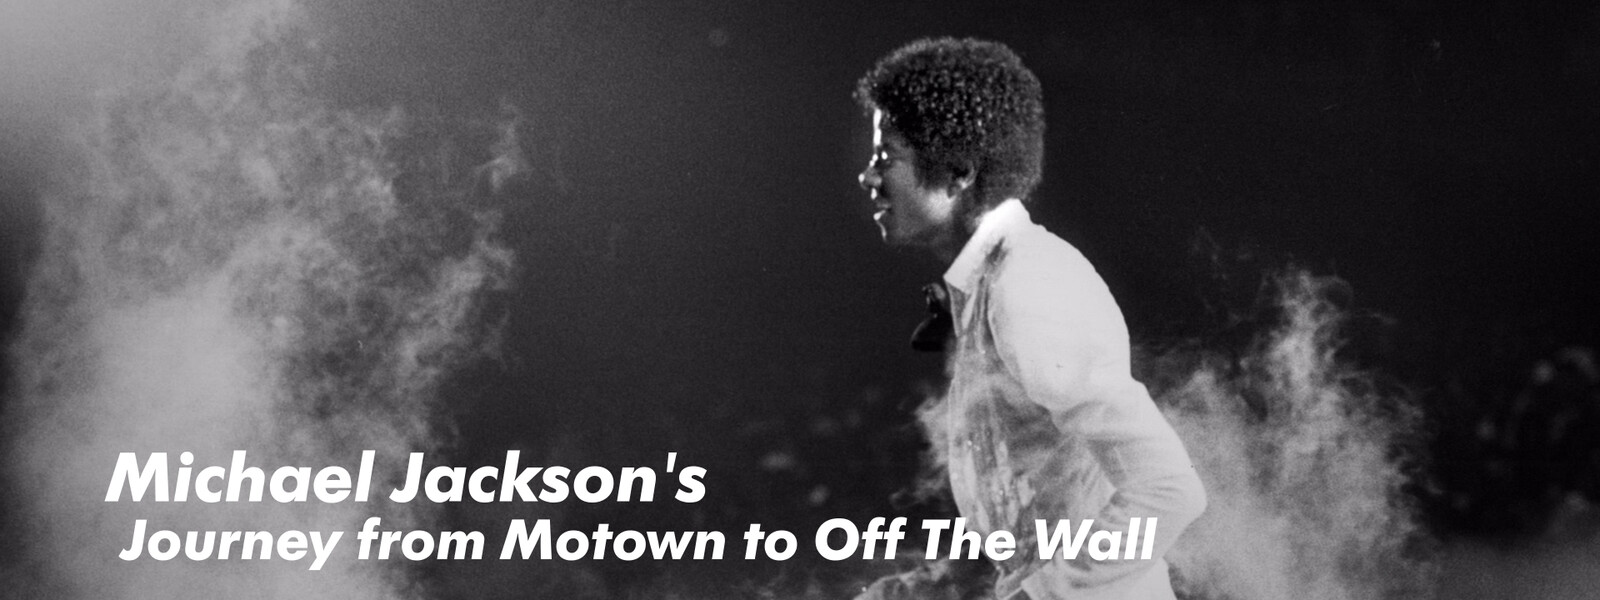 マイケル･ジャクソン：映画「Michael Jackson's Journey from Motown to Off The Wall」の動画 - マイケル・ジャクソン ライフ・オブ・アイコン 想い出をあつめて (字幕版)